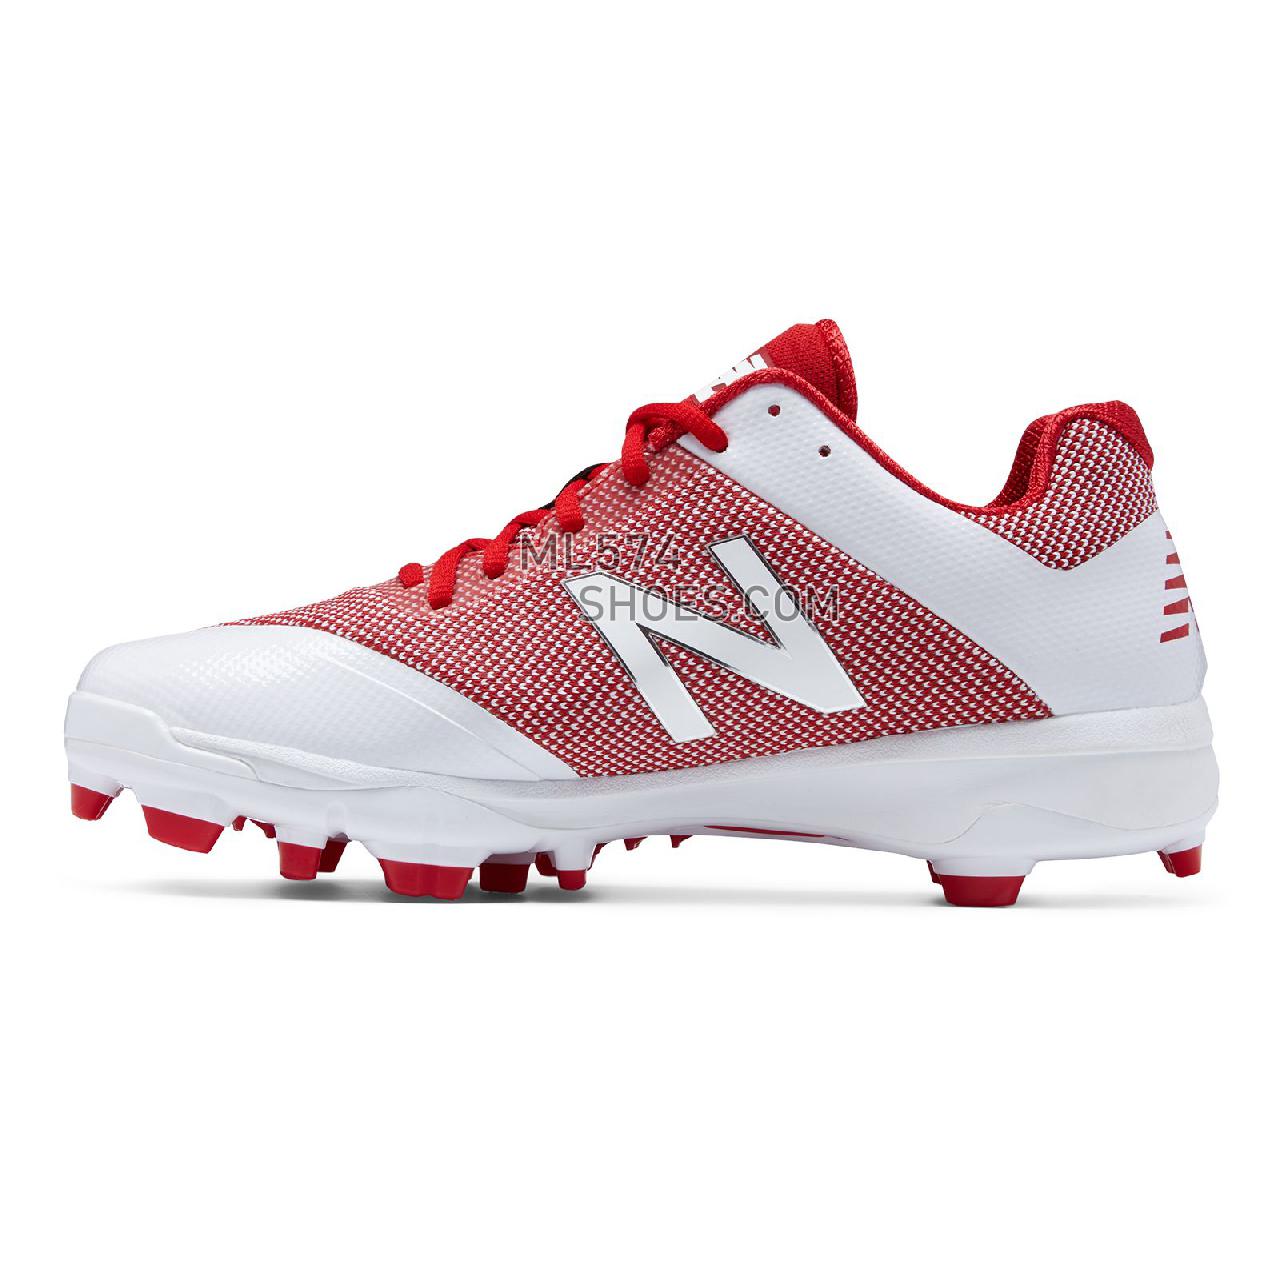 New Balance TPU 4040v4 - Men's 4040 - Baseball Red with White - PL4040R4